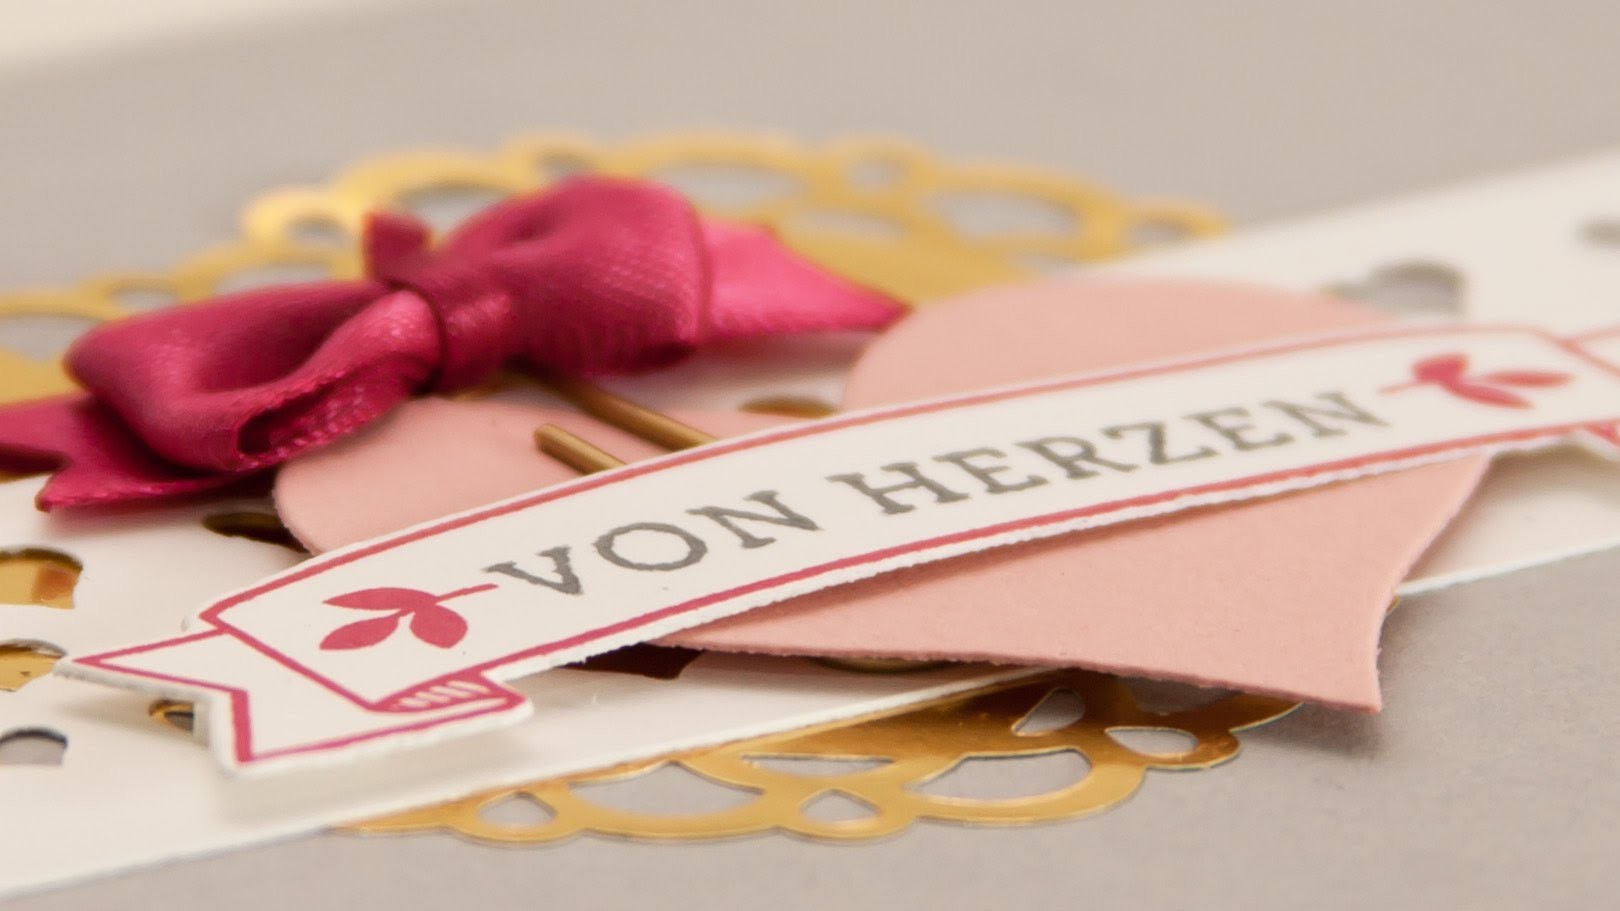 Let's make a card - Muttertagskarte mit Blüten der Liebe - Stampin' Up!